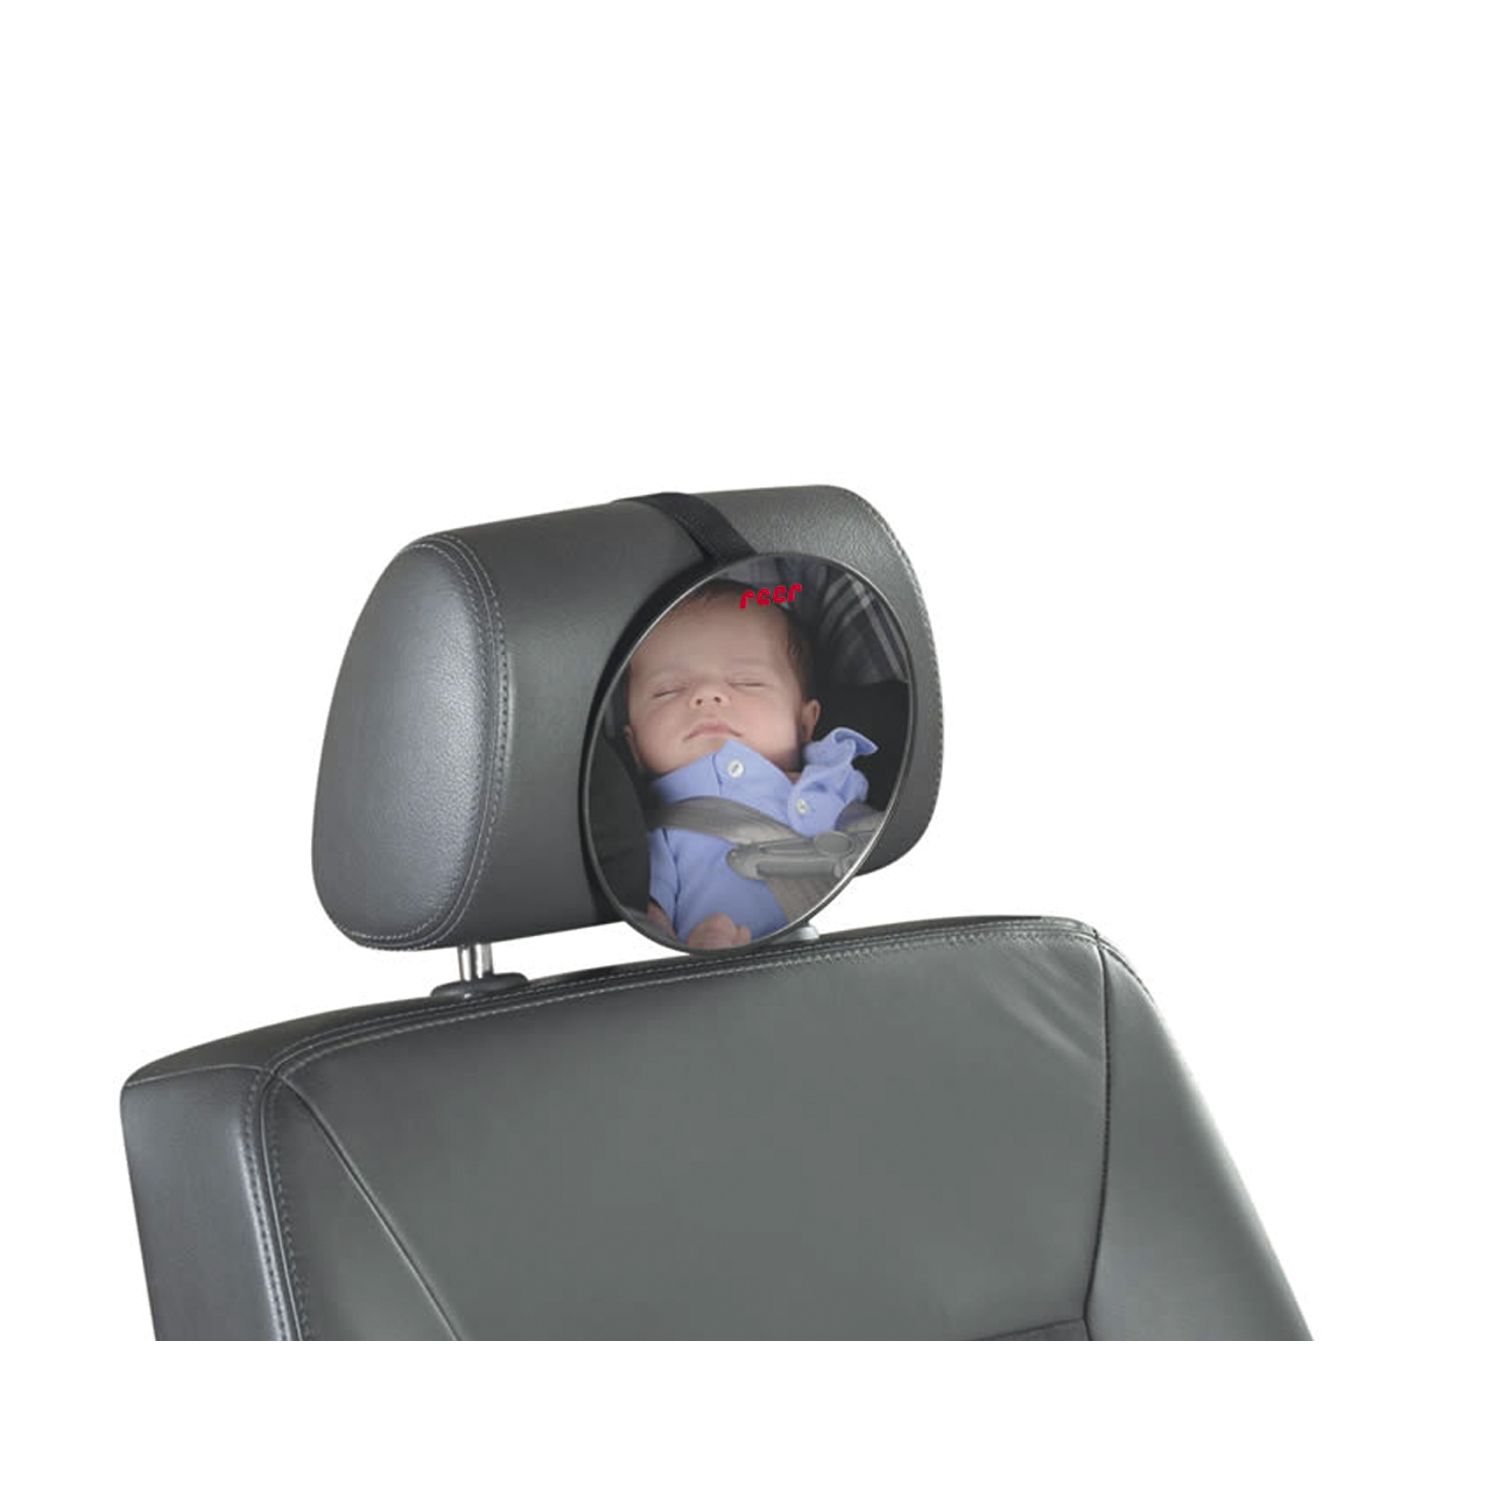 REER Baby Rücksitzspiegel SafetyView für mehr Sicherheit im Auto